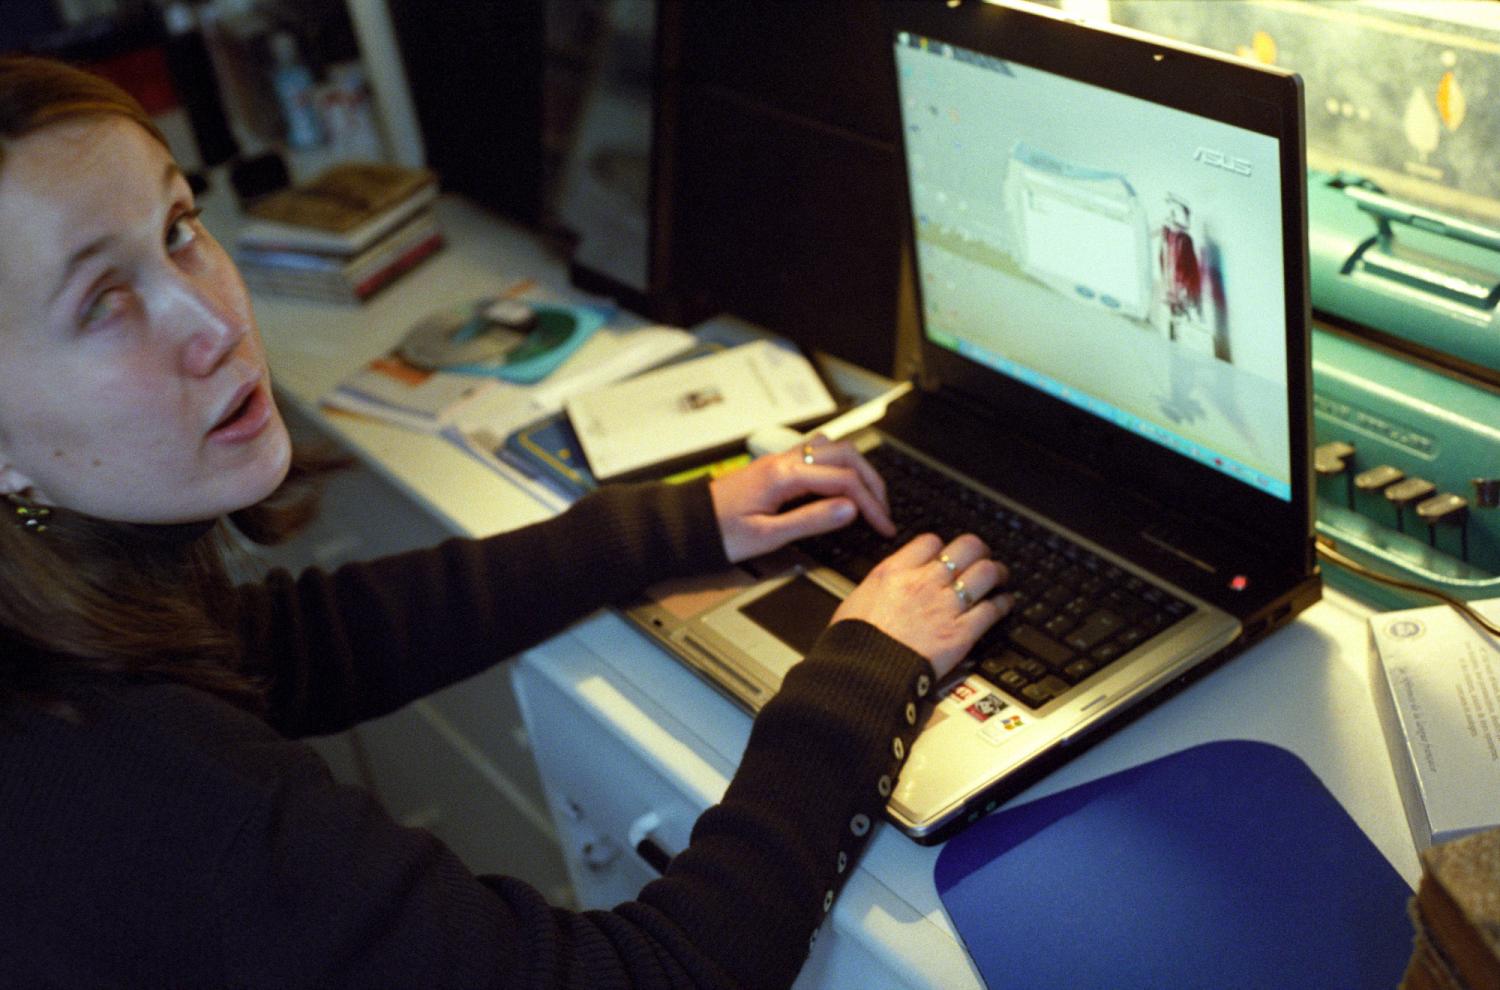 Céline devant son ordinateur portable équipé d'un logiciel de synthèse vocale. Derrière se cache une machine à écrire en braille Perkins, délaissée. Paris, janvier 2006.